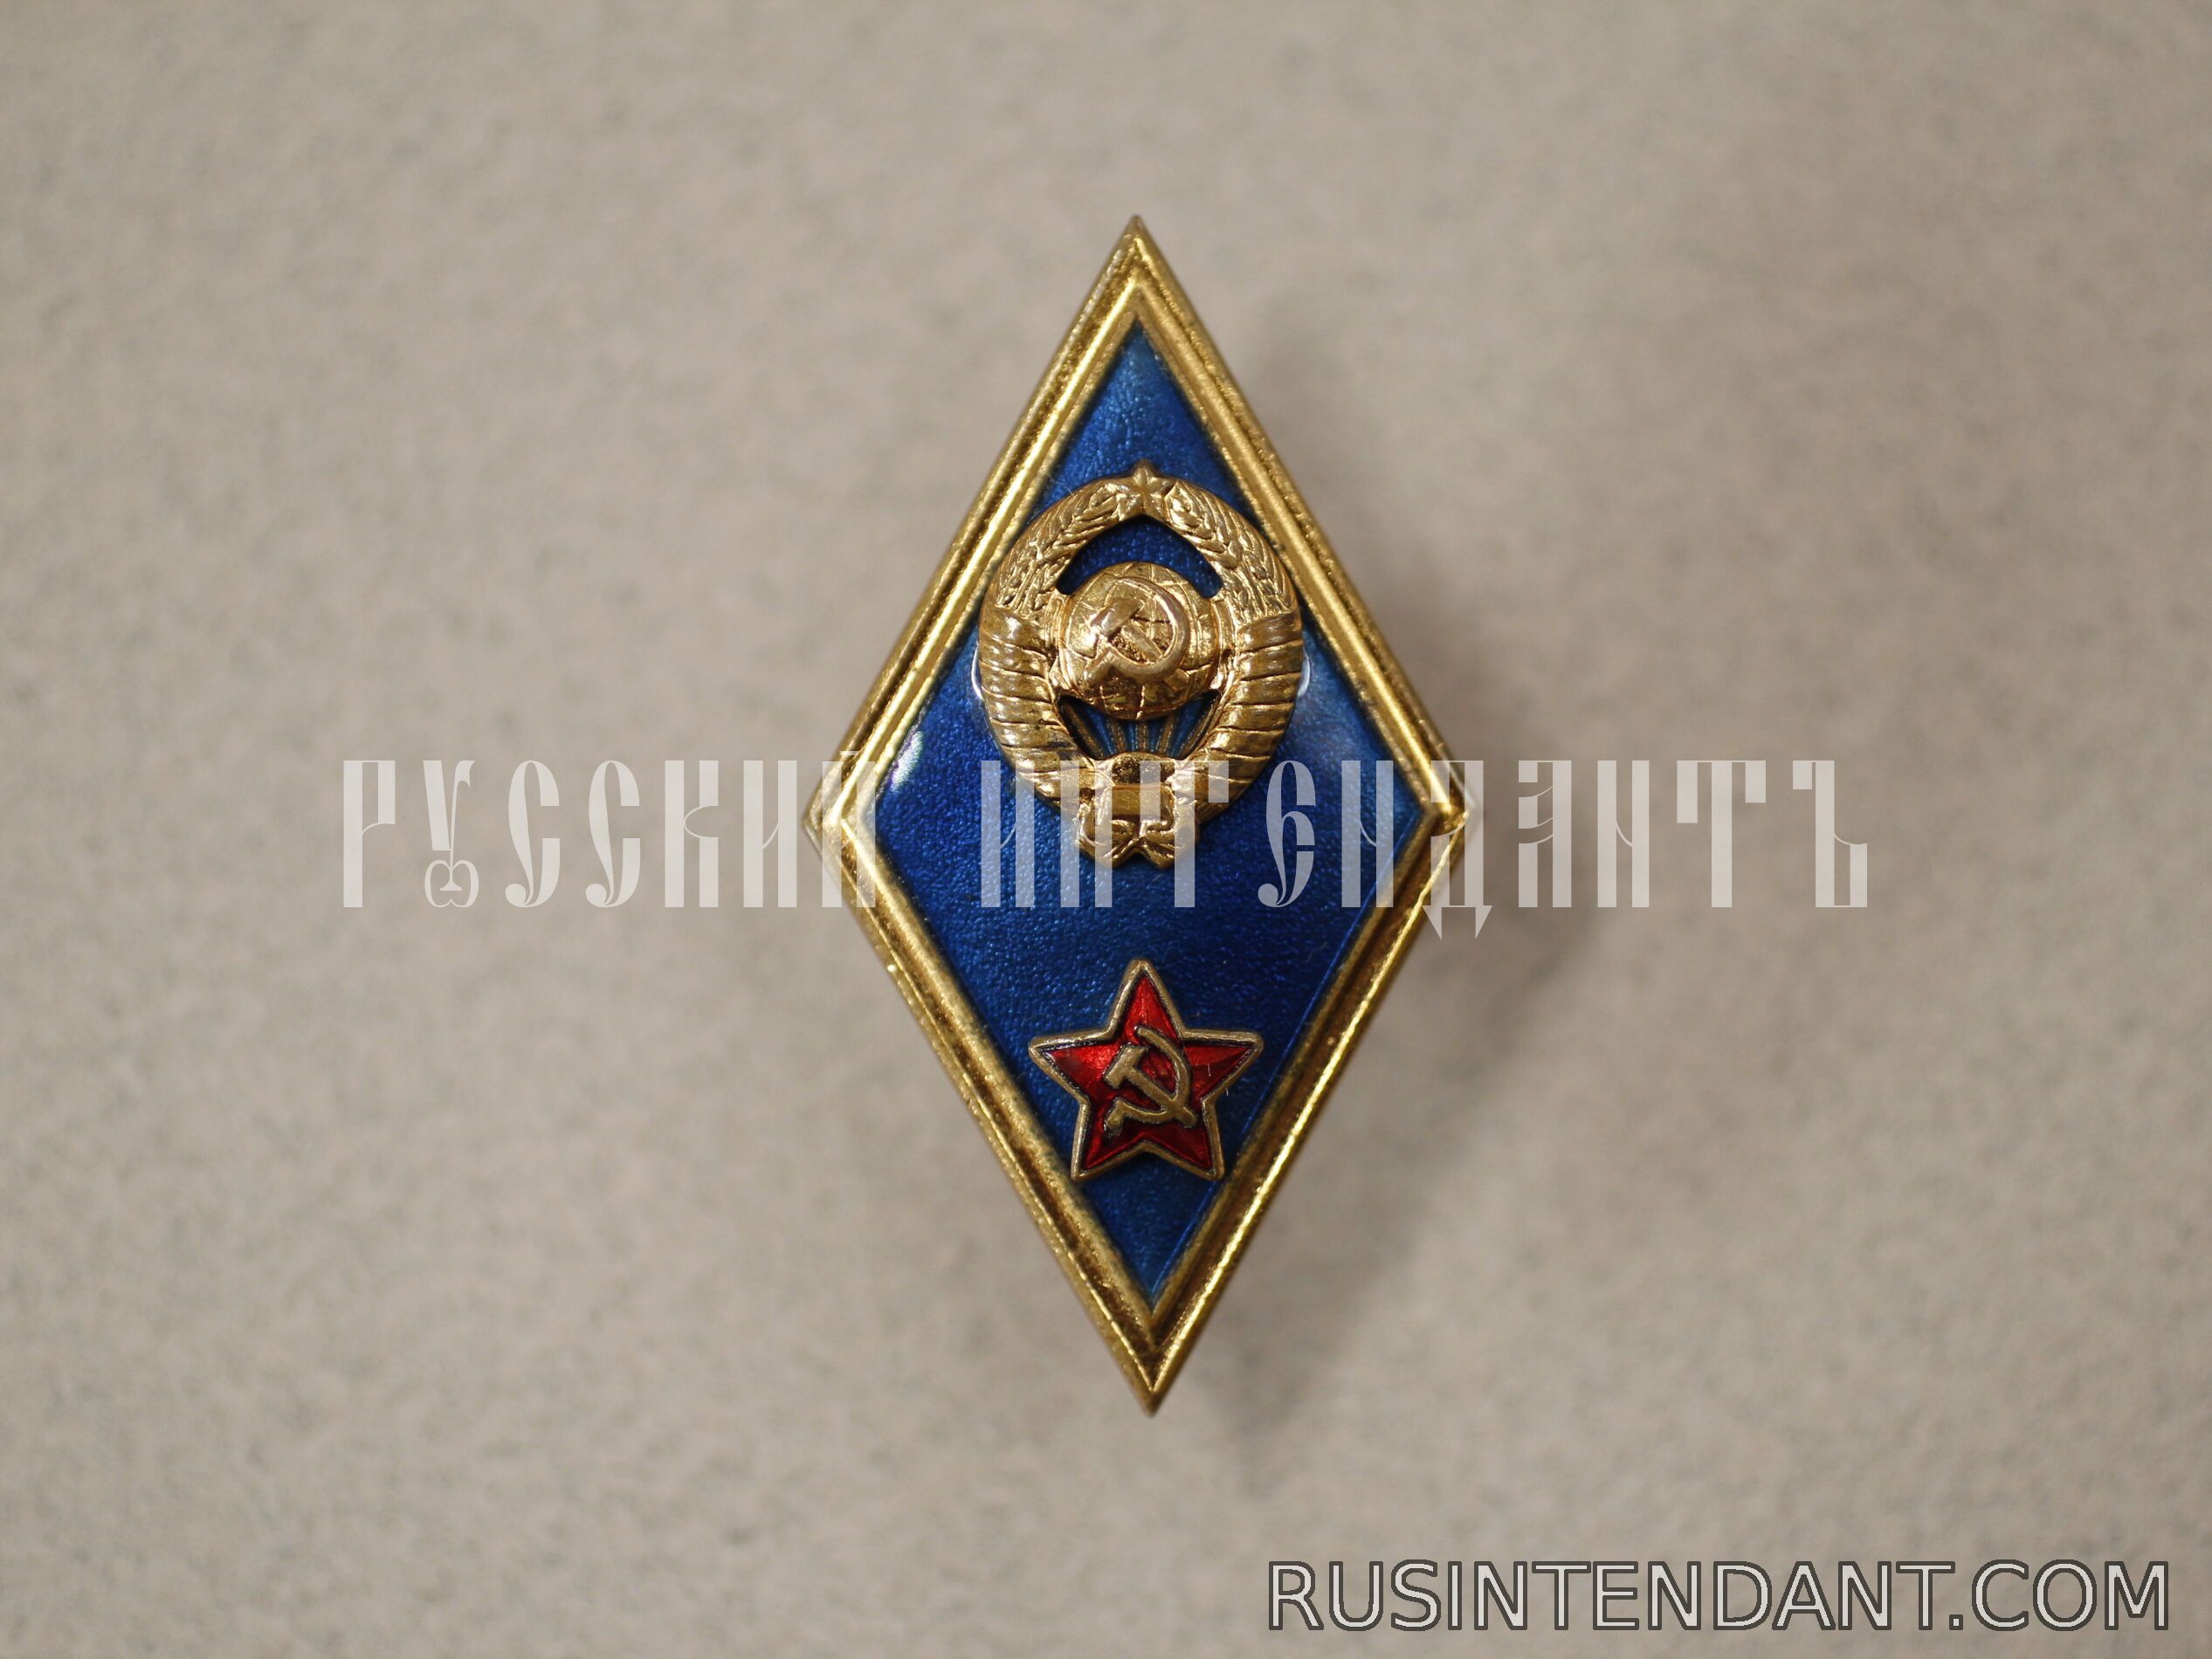 Фото 2: Знак Высшего военного училища СССР 